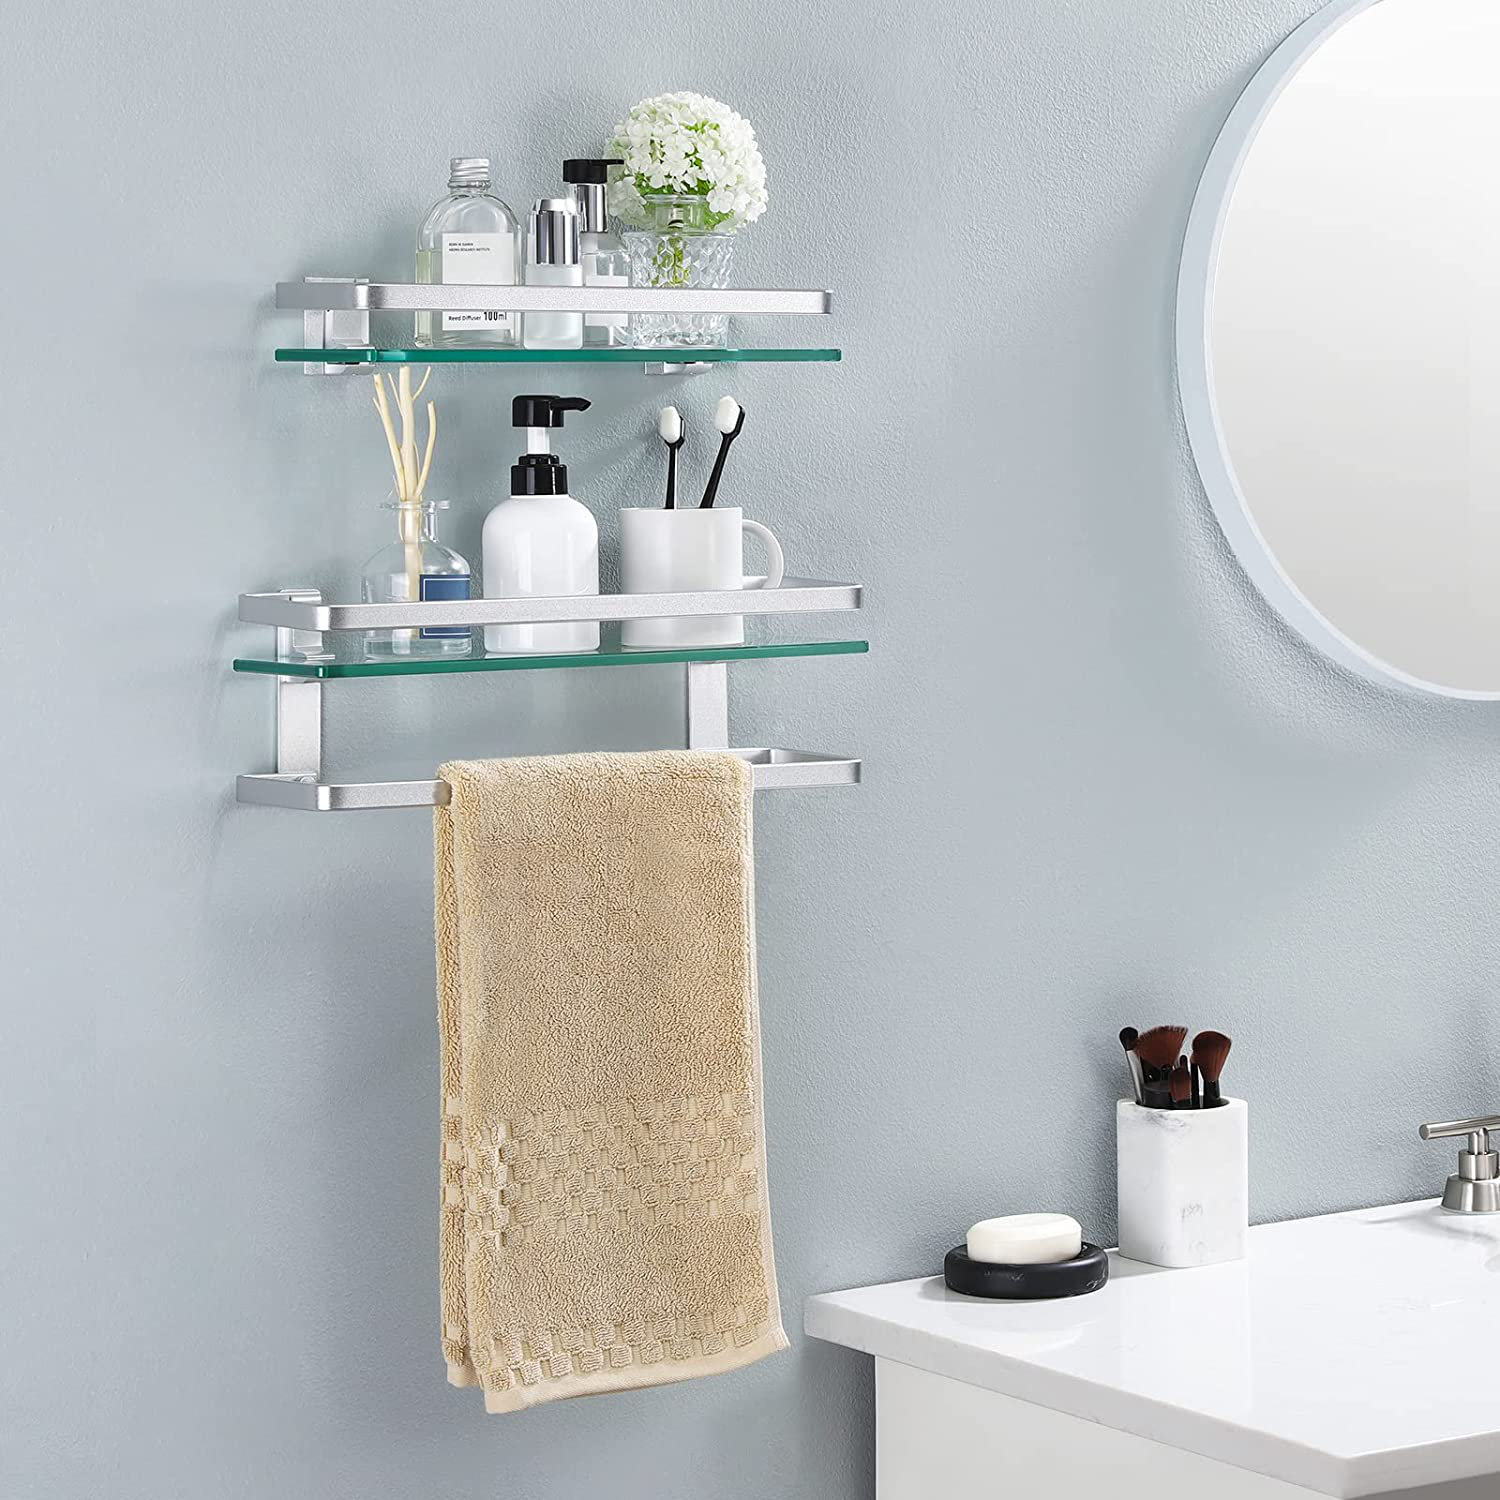 Luxury Bathroom Shelves Tempered Glass Shower Shelf Single Bar